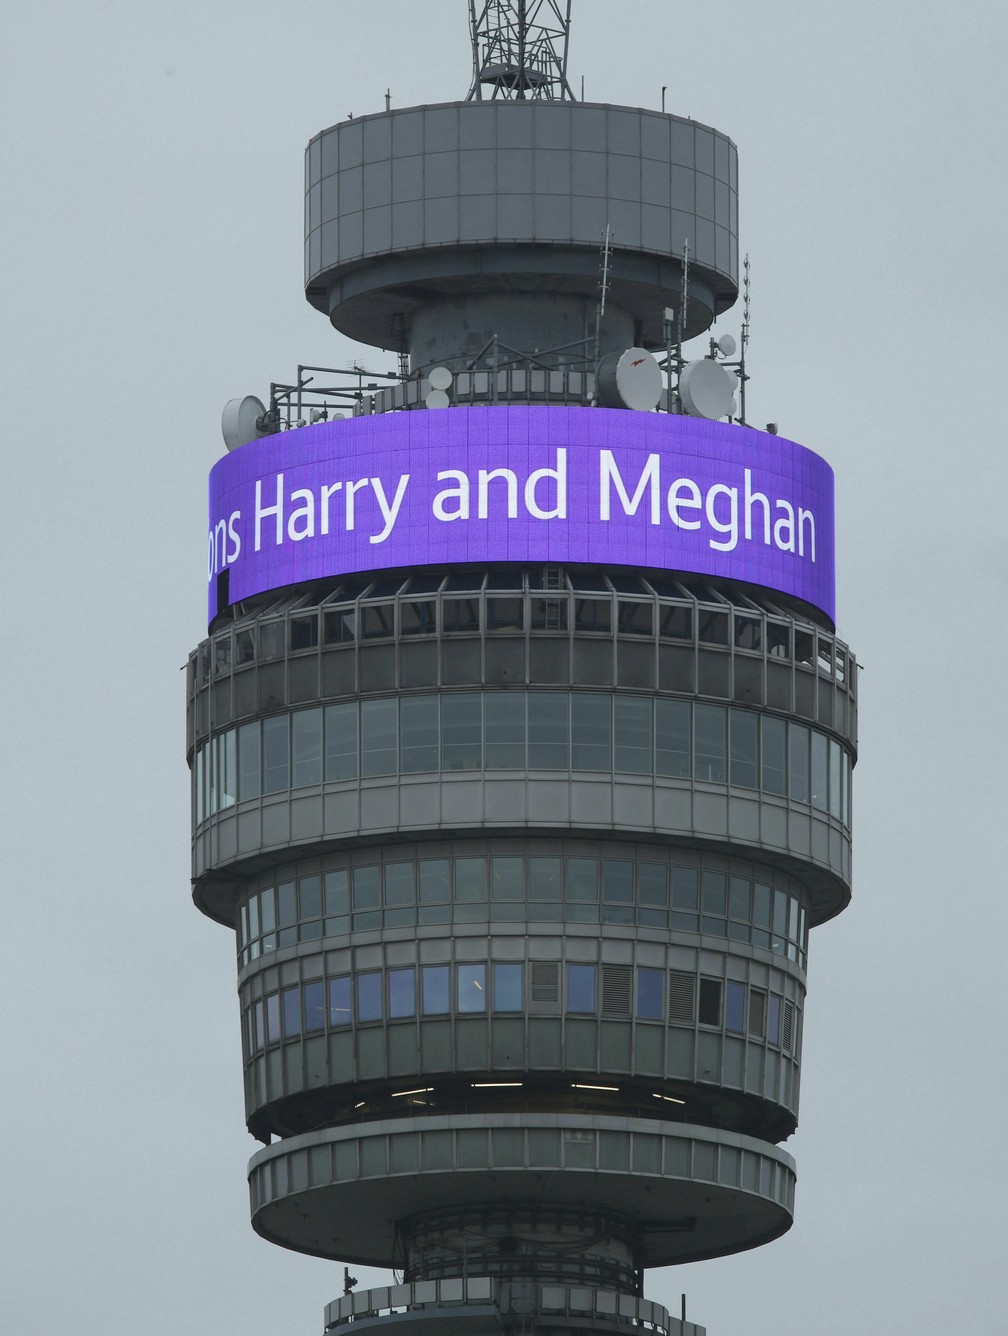 Torre de telecomunicações em Londres com mensagem de parabéns a Harry e Meghan na segunda-feira (6). — Foto: Yui Mok/PA via AP